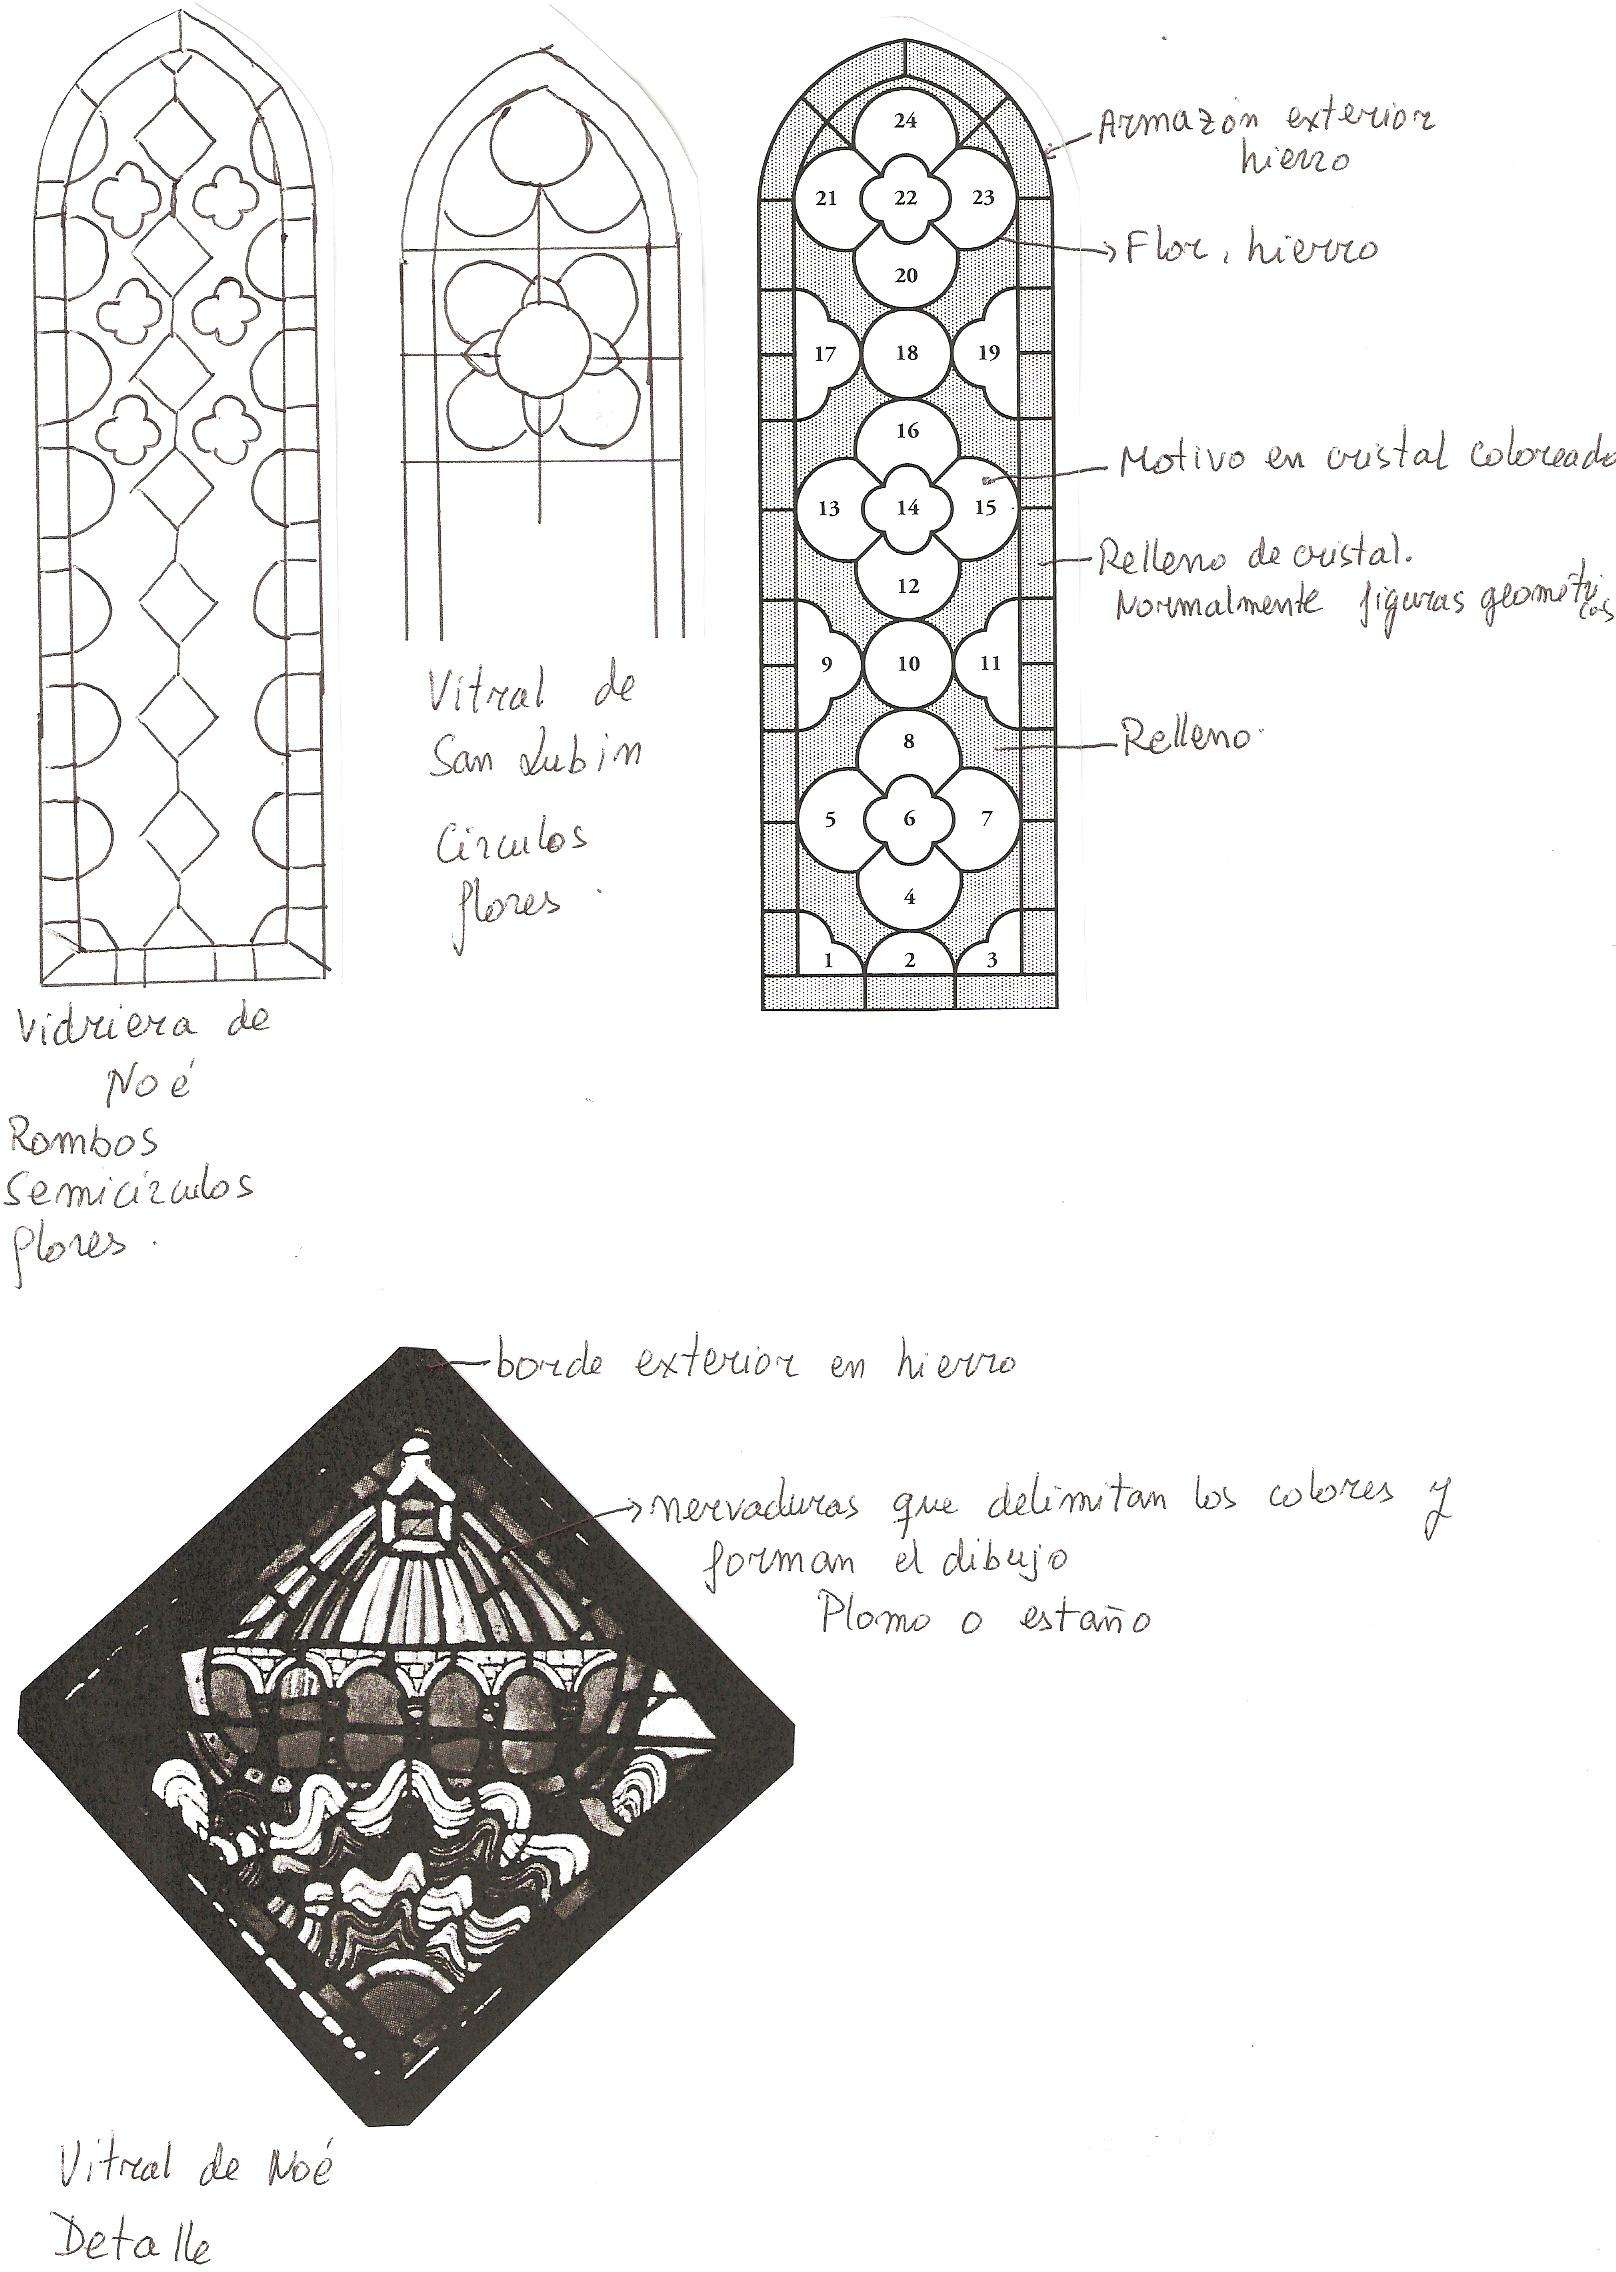 Los Vitrales - Chartres: Arte, espiritualidad y esoterismo. (4)